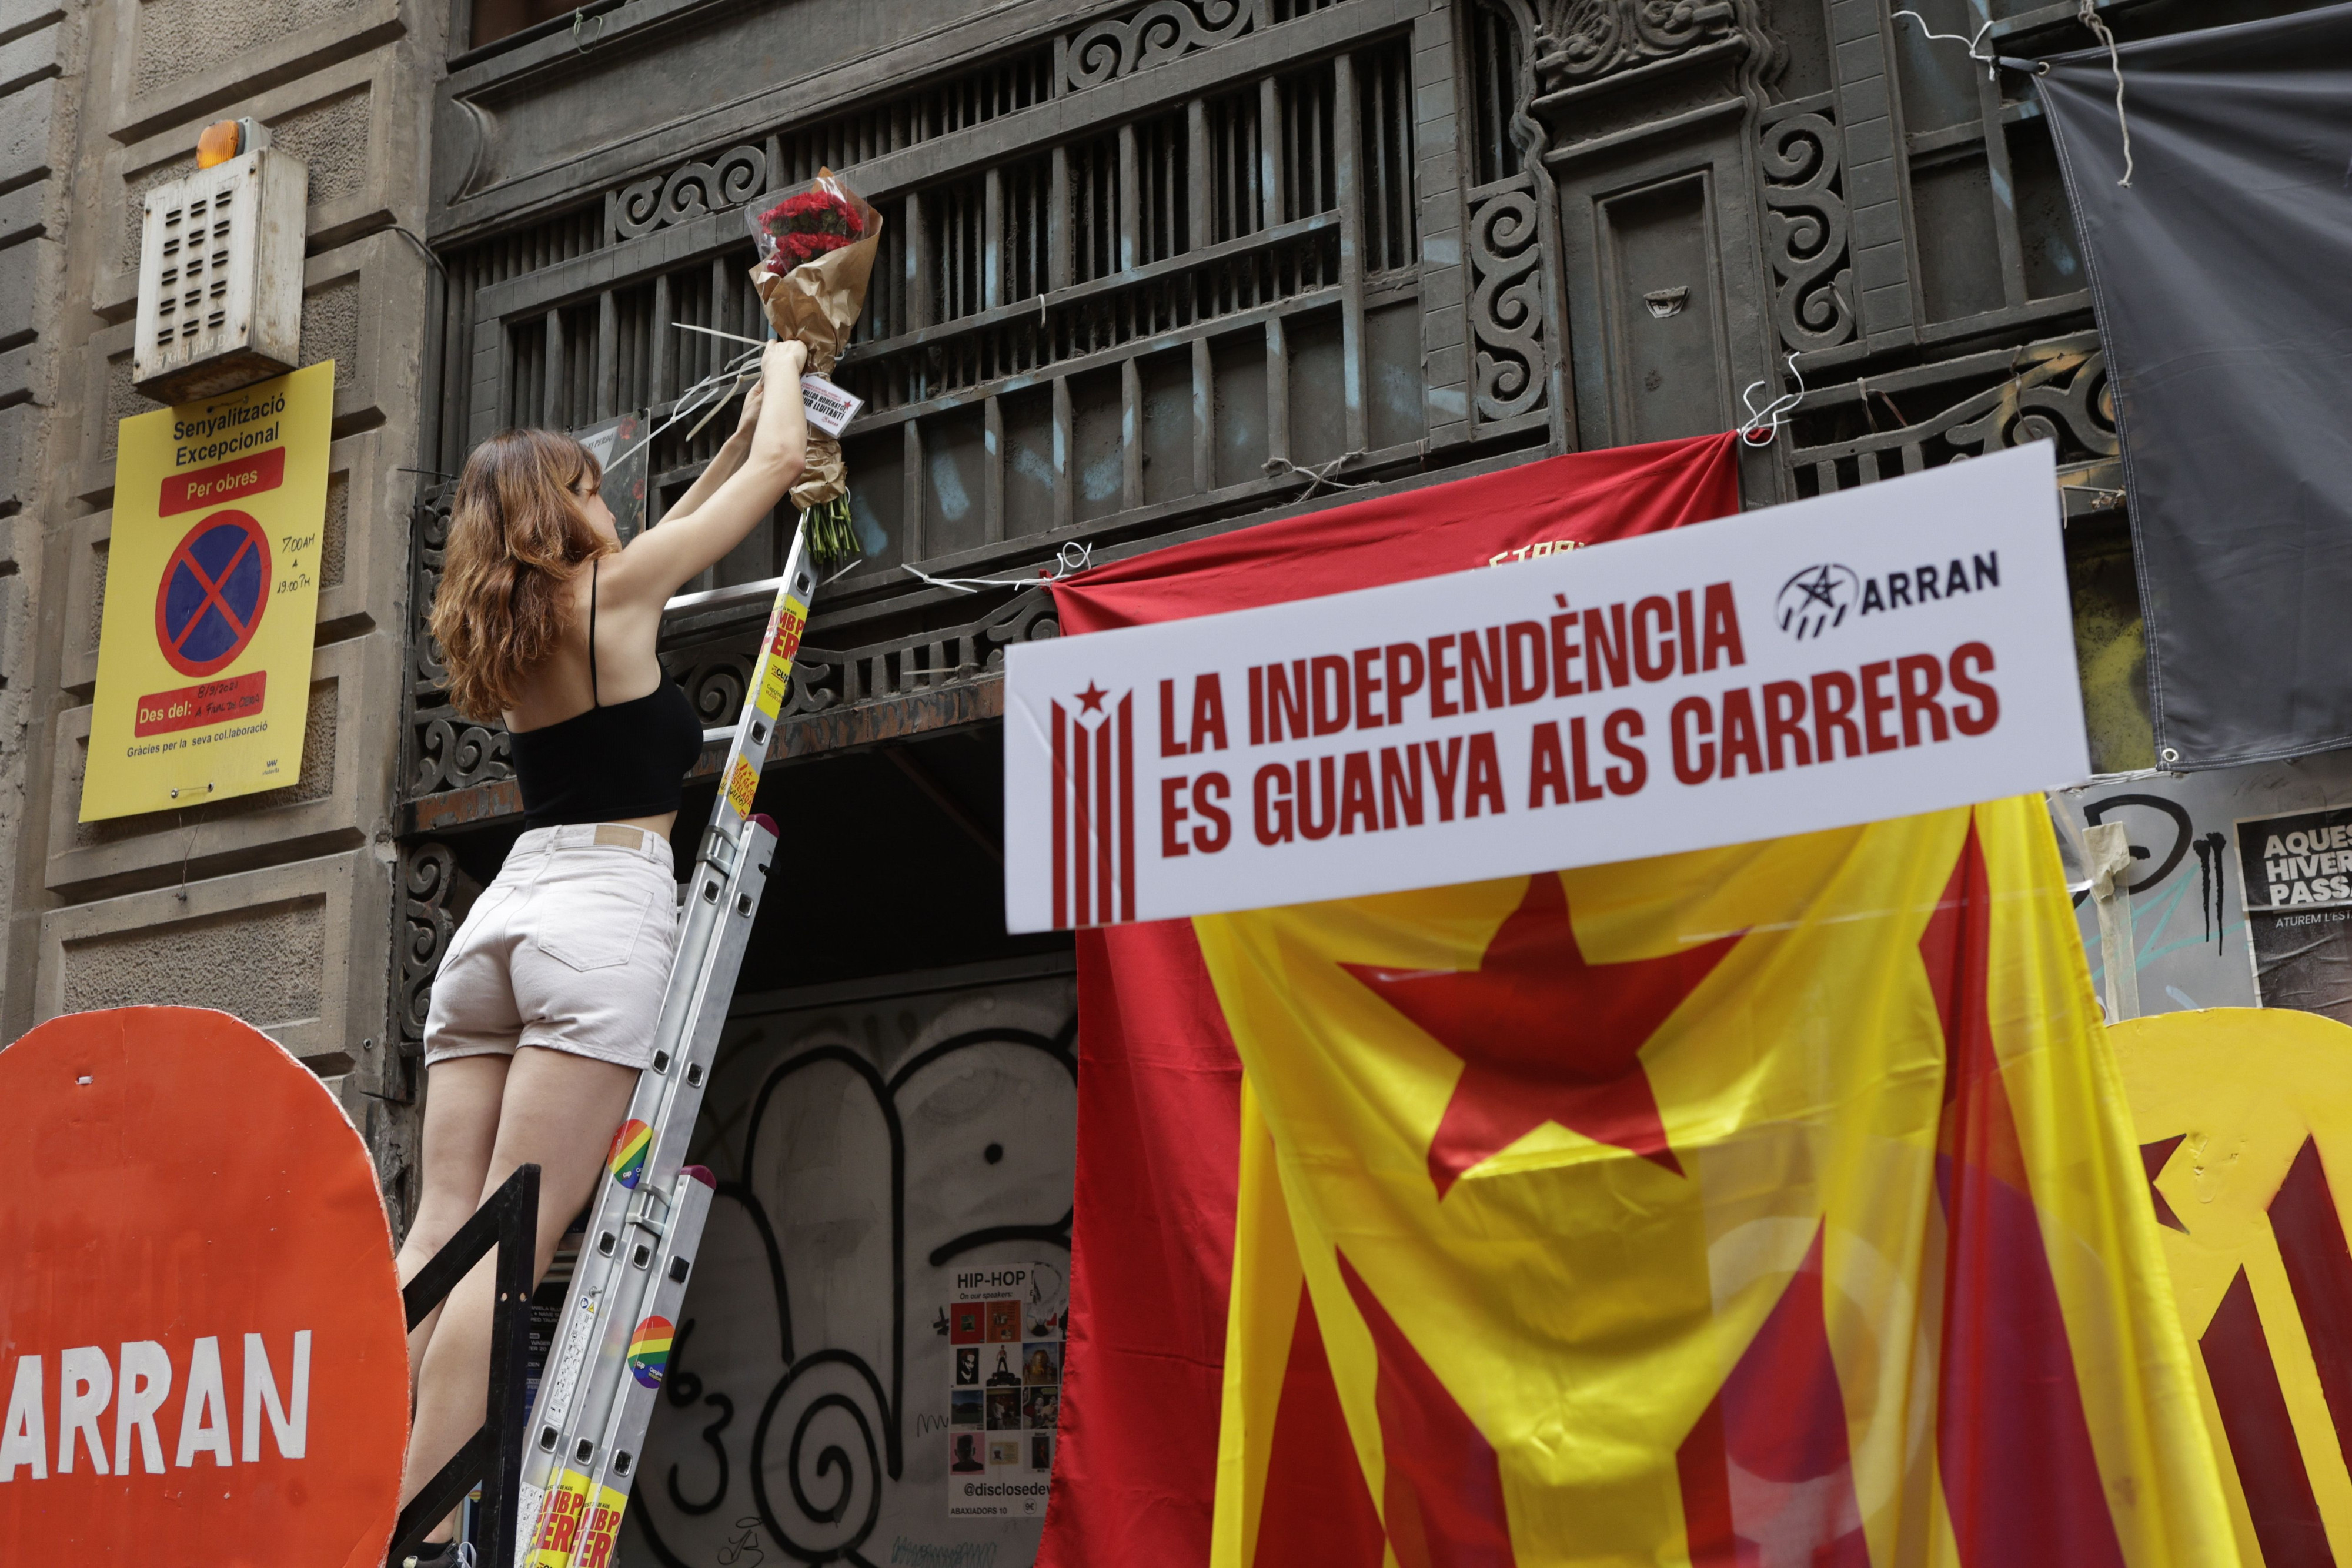 Imagen de una manifestación de la izquierda independentista /EFE - QUIQUE GARCÍA